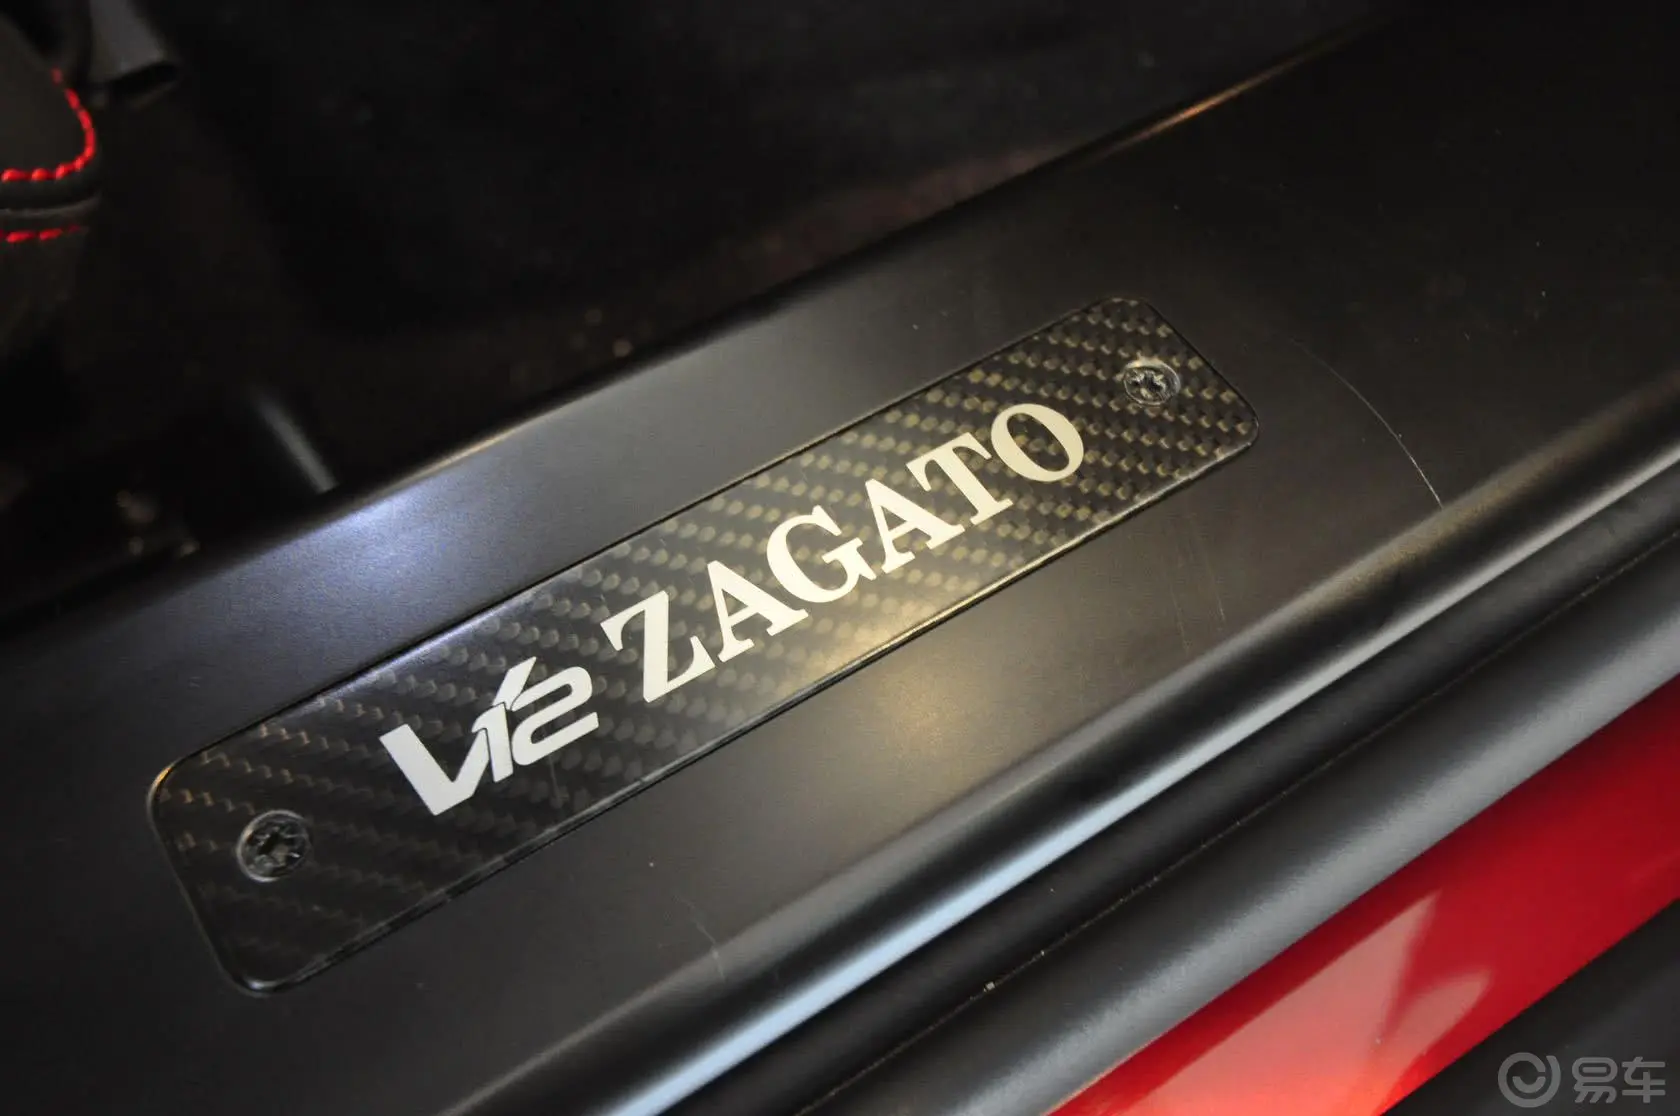 V12 ZagatoV12 zagato内饰